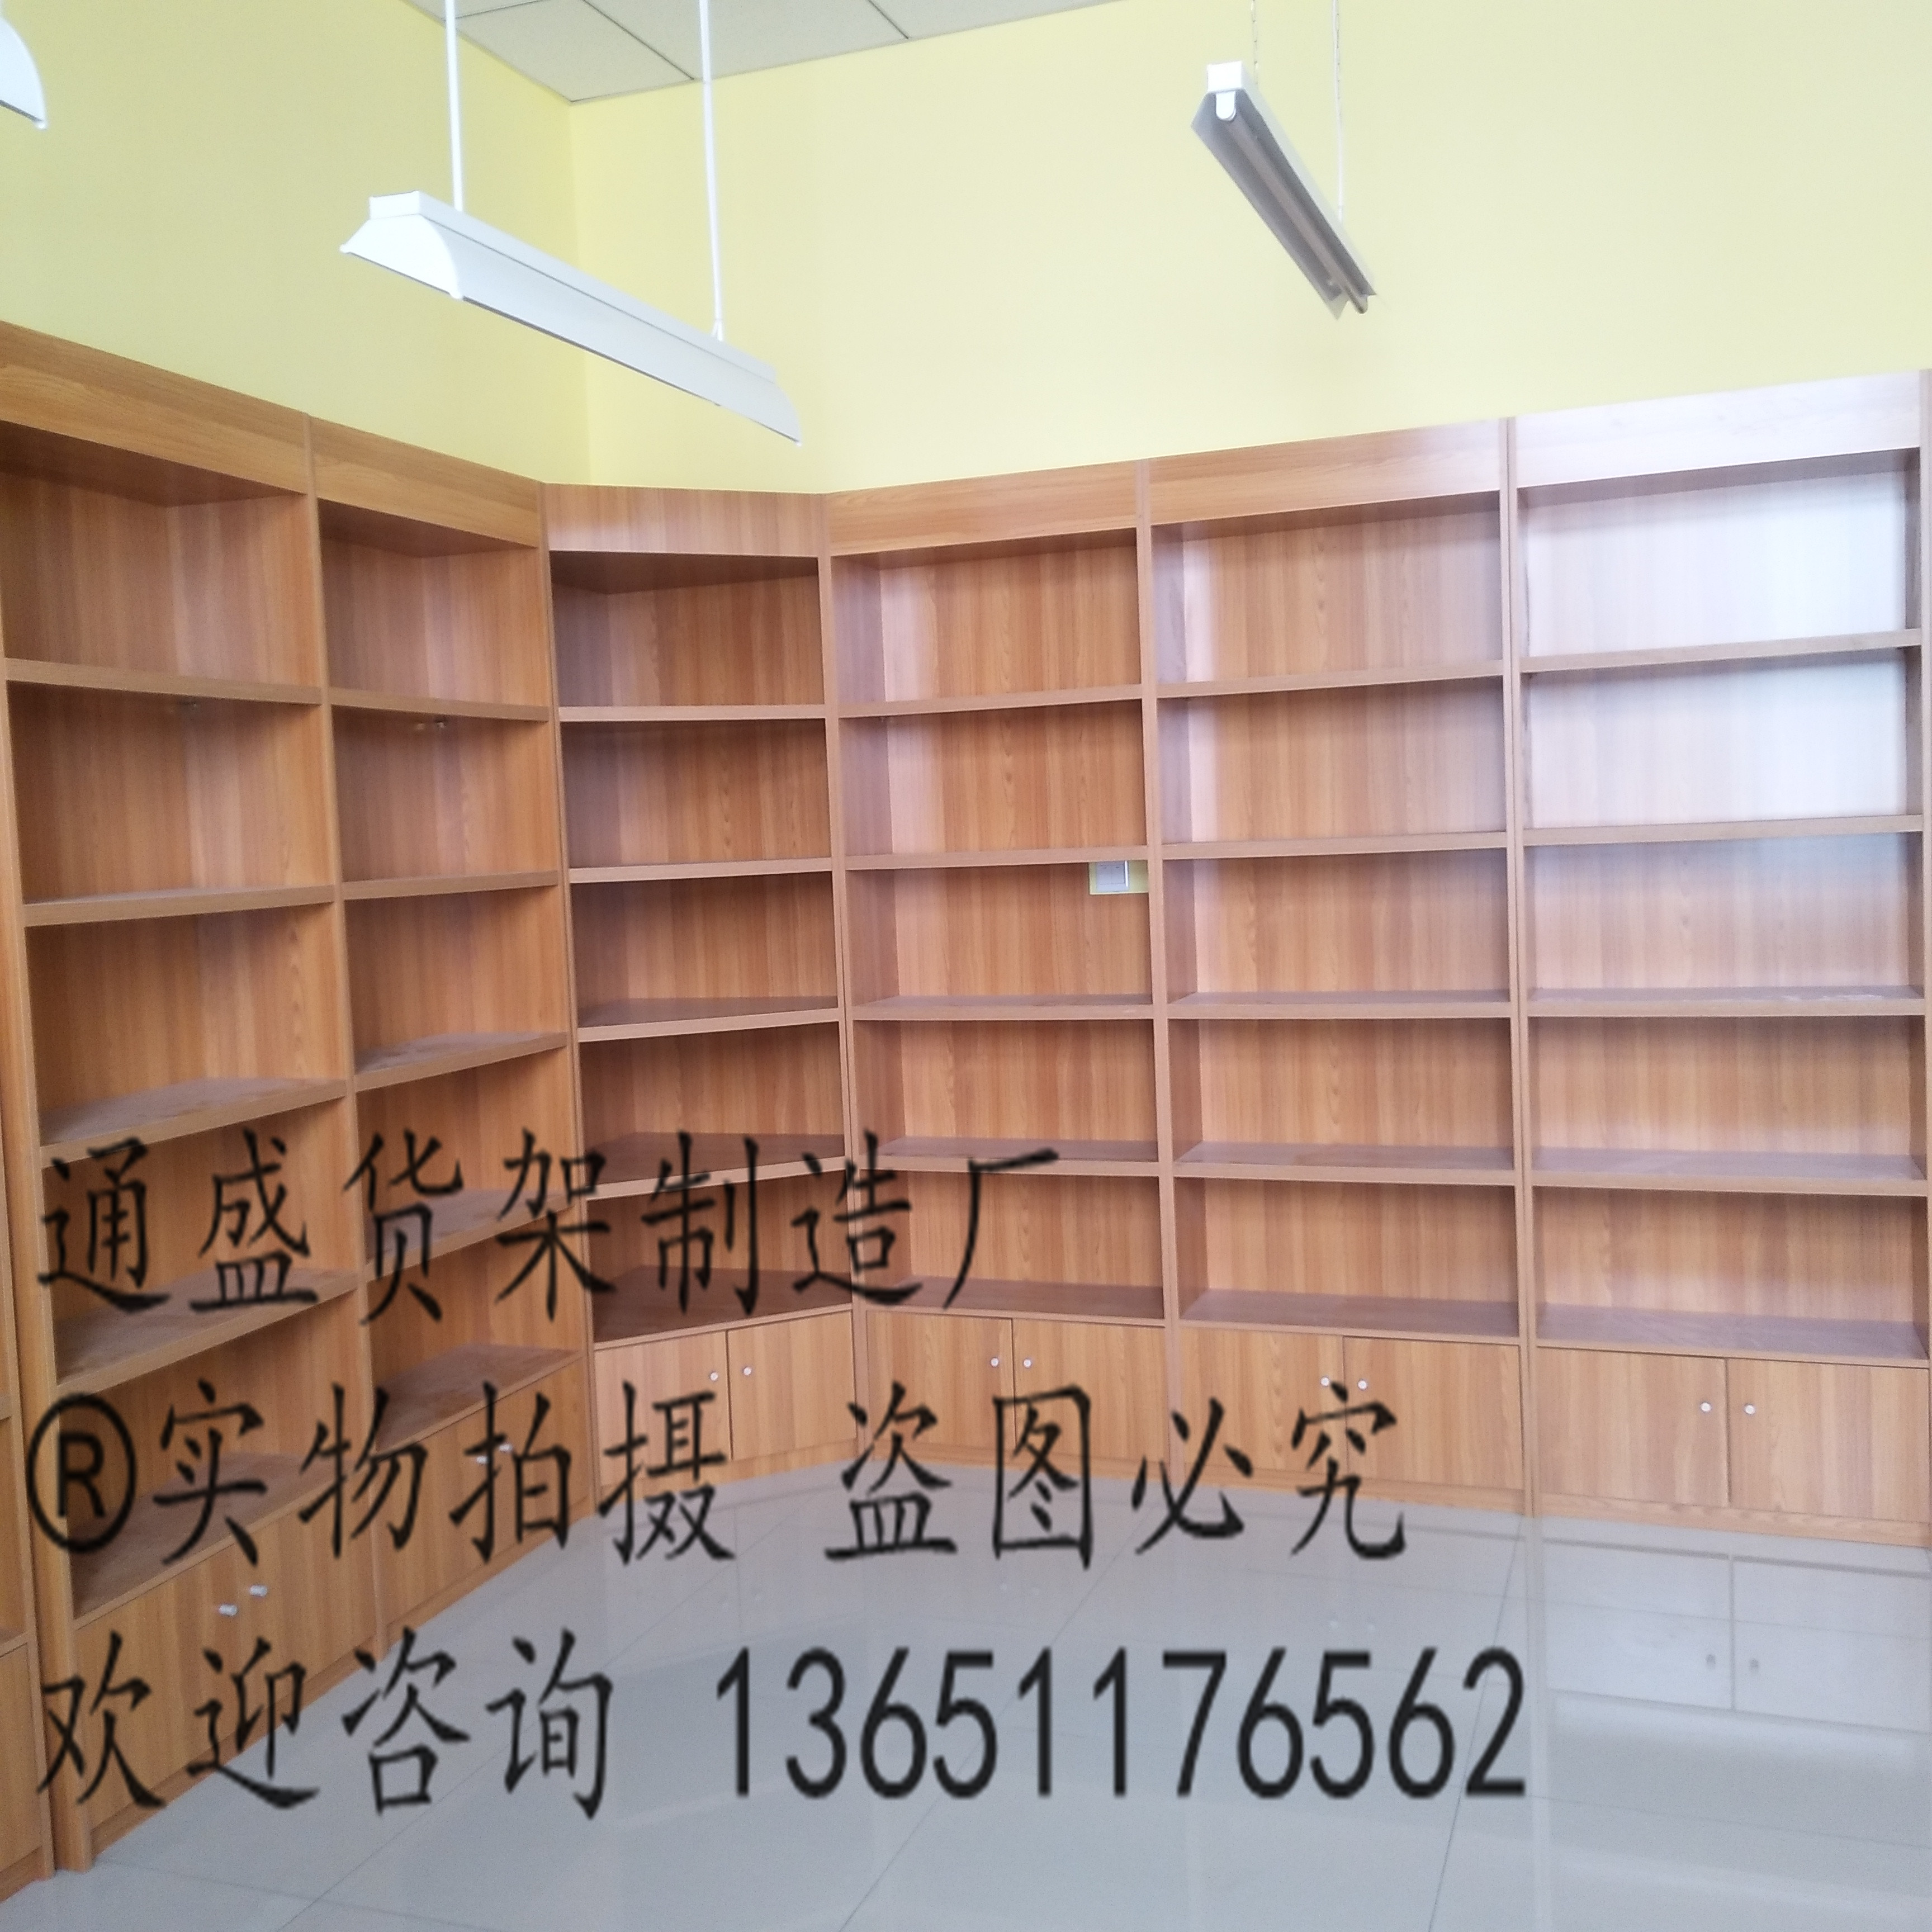 木质货架展示柜学校图书馆书店书架阅览室书柜资料展示架柜